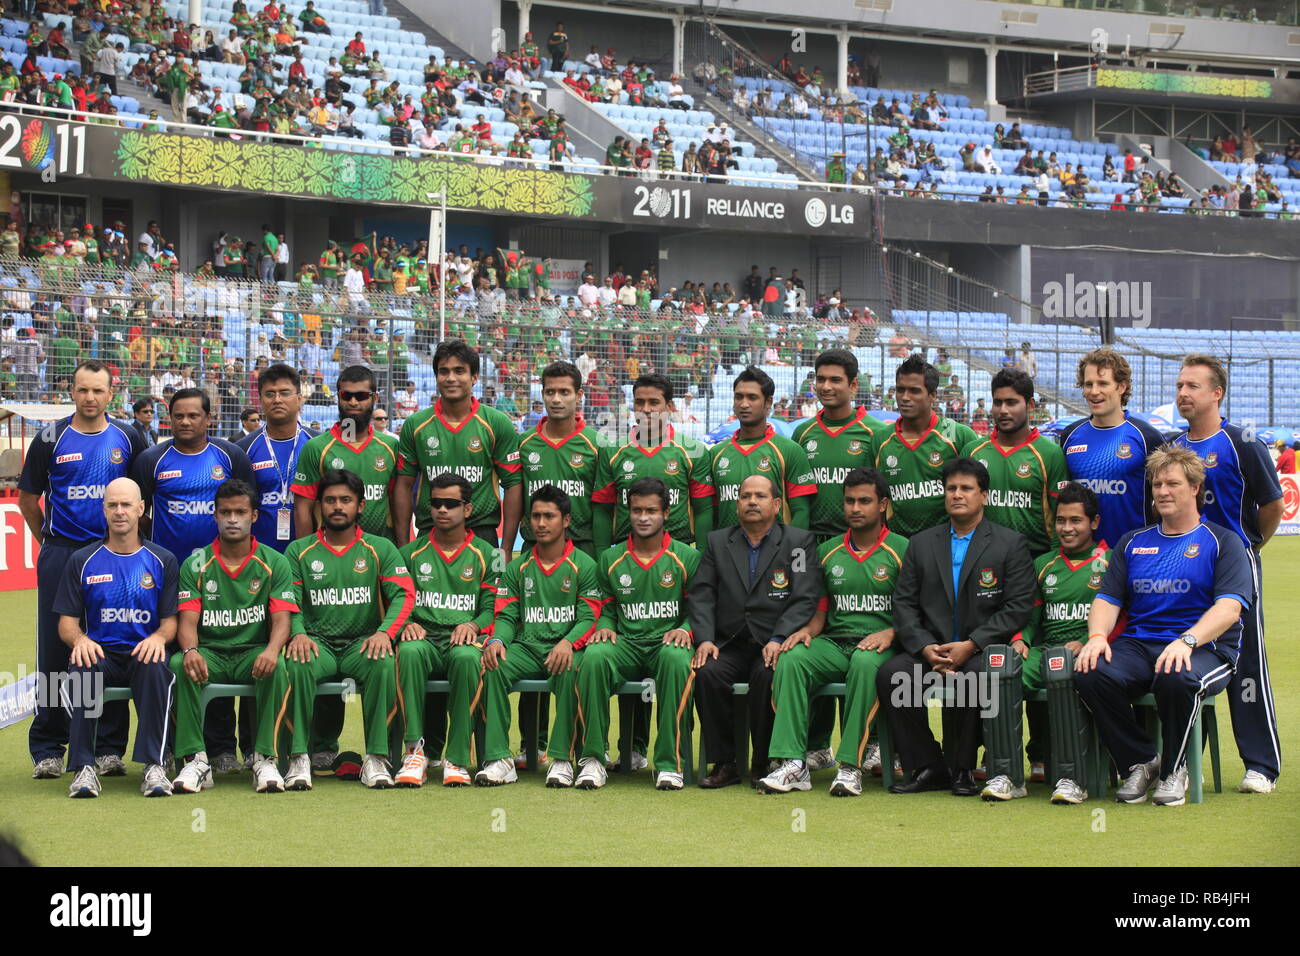 Le Bangladesh équipe de cricket de poser pour la photographie au cours de l'ICC Cricket World Cup 2011 à la Sher-e-bangla National Stadium. Dhaka, Bangladesh. Banque D'Images